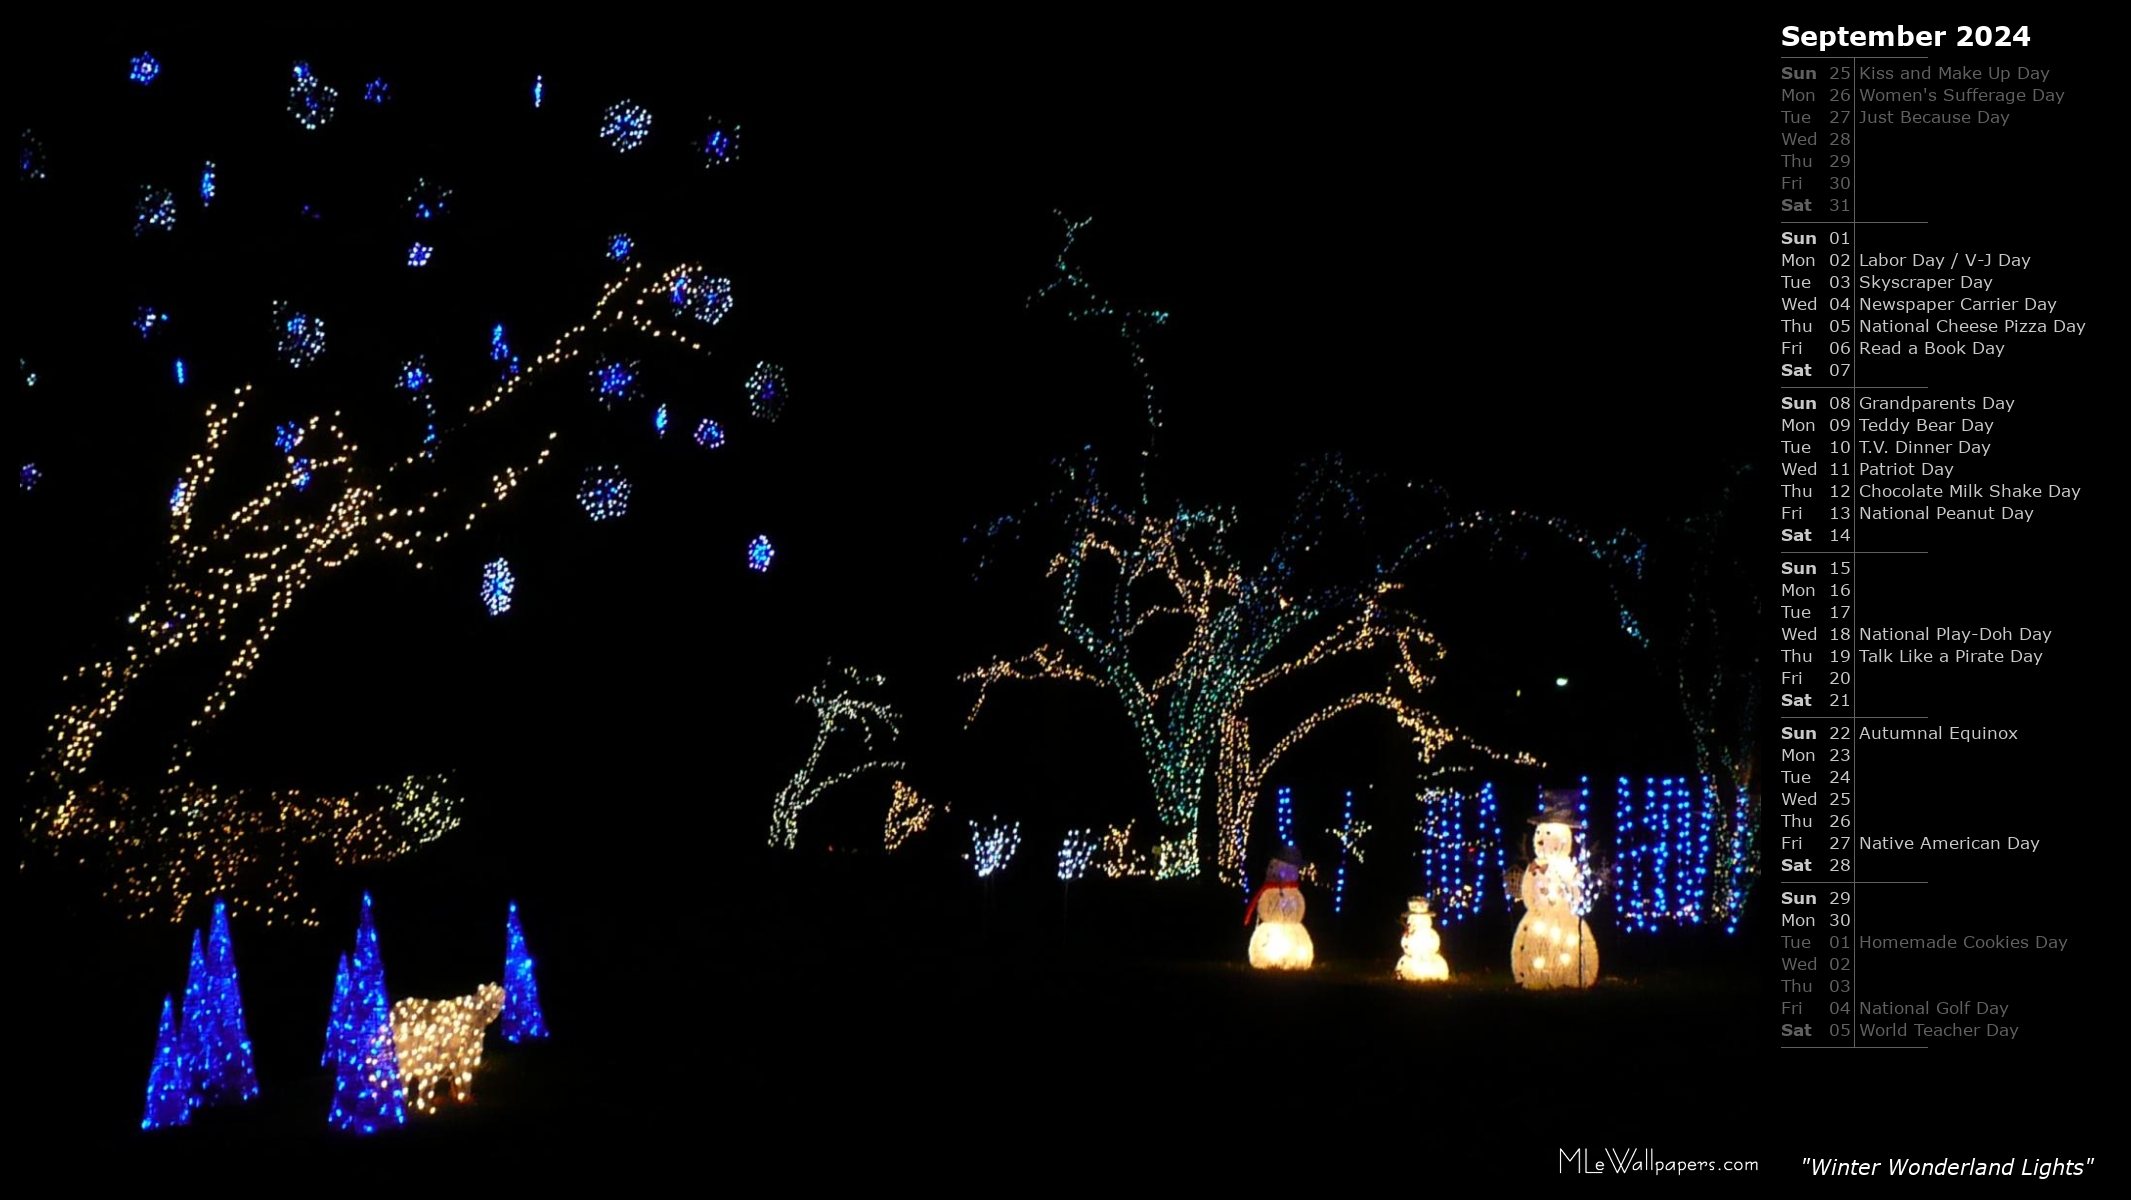 Mlewallpapers Com Winter Wonderland Lights Calendar